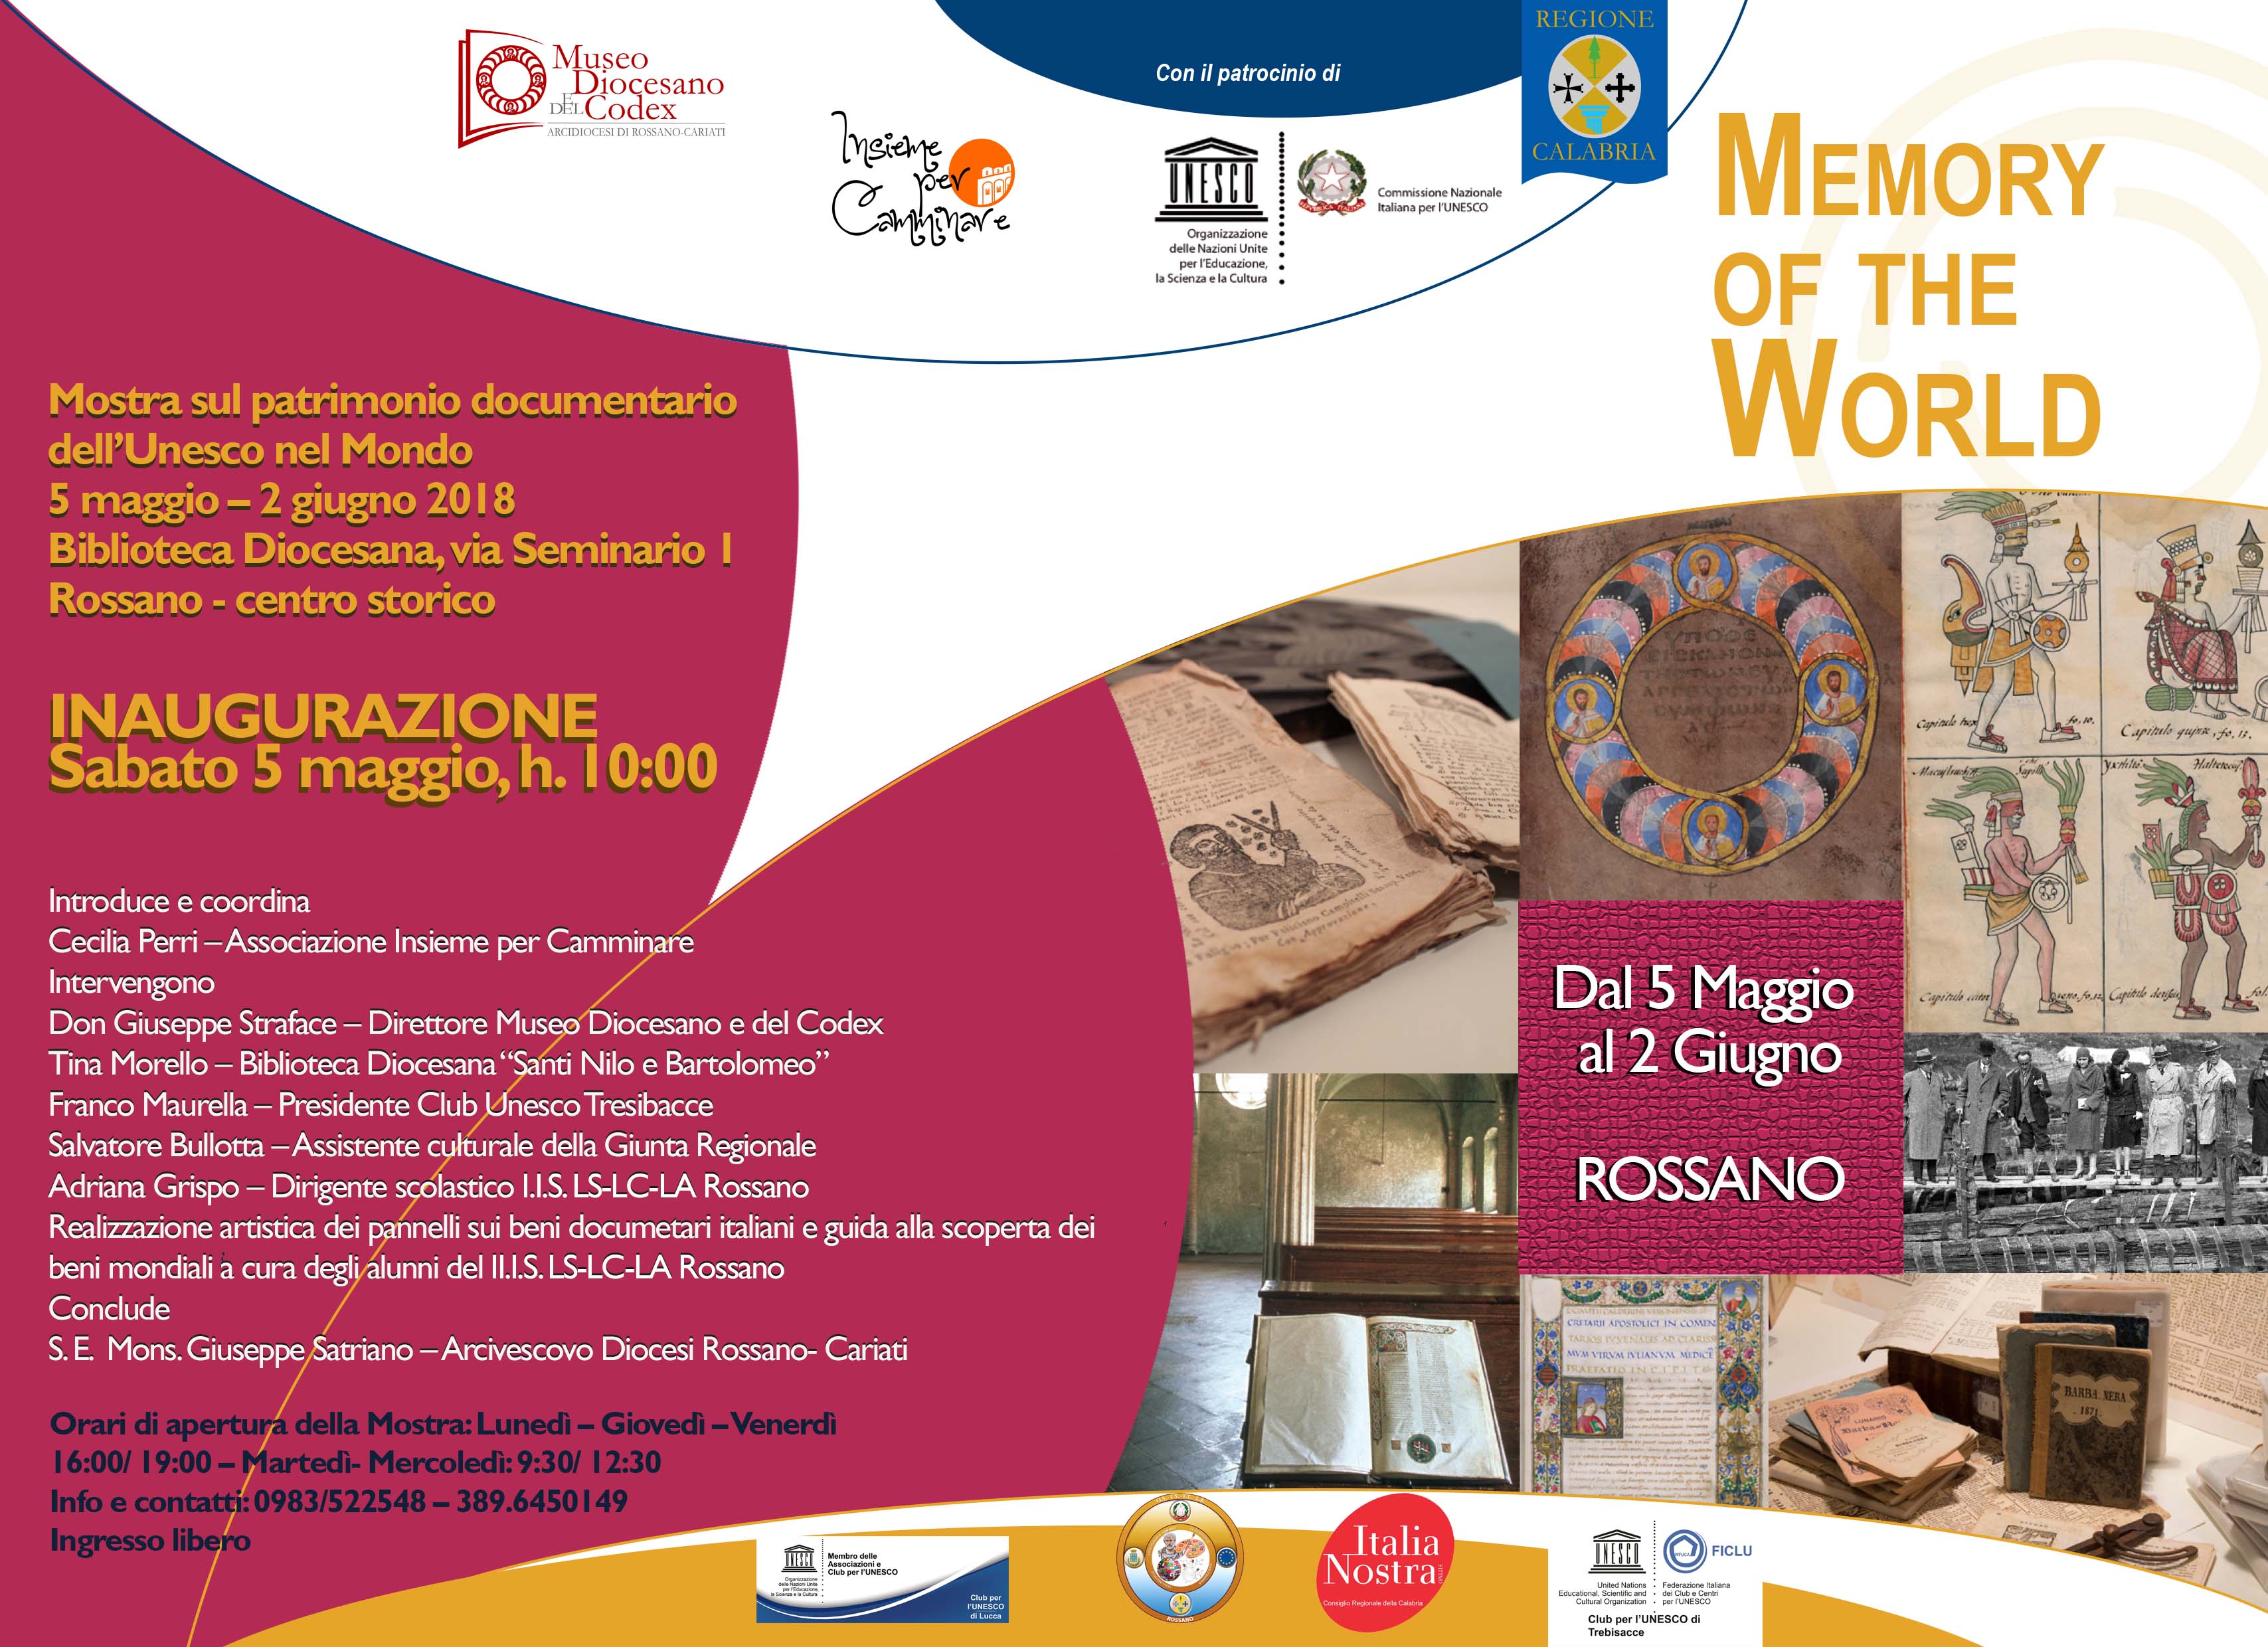 MEMORY OF THE WORLD - Mostra sul patrimonio documentario dell'Unesco nel Mondo